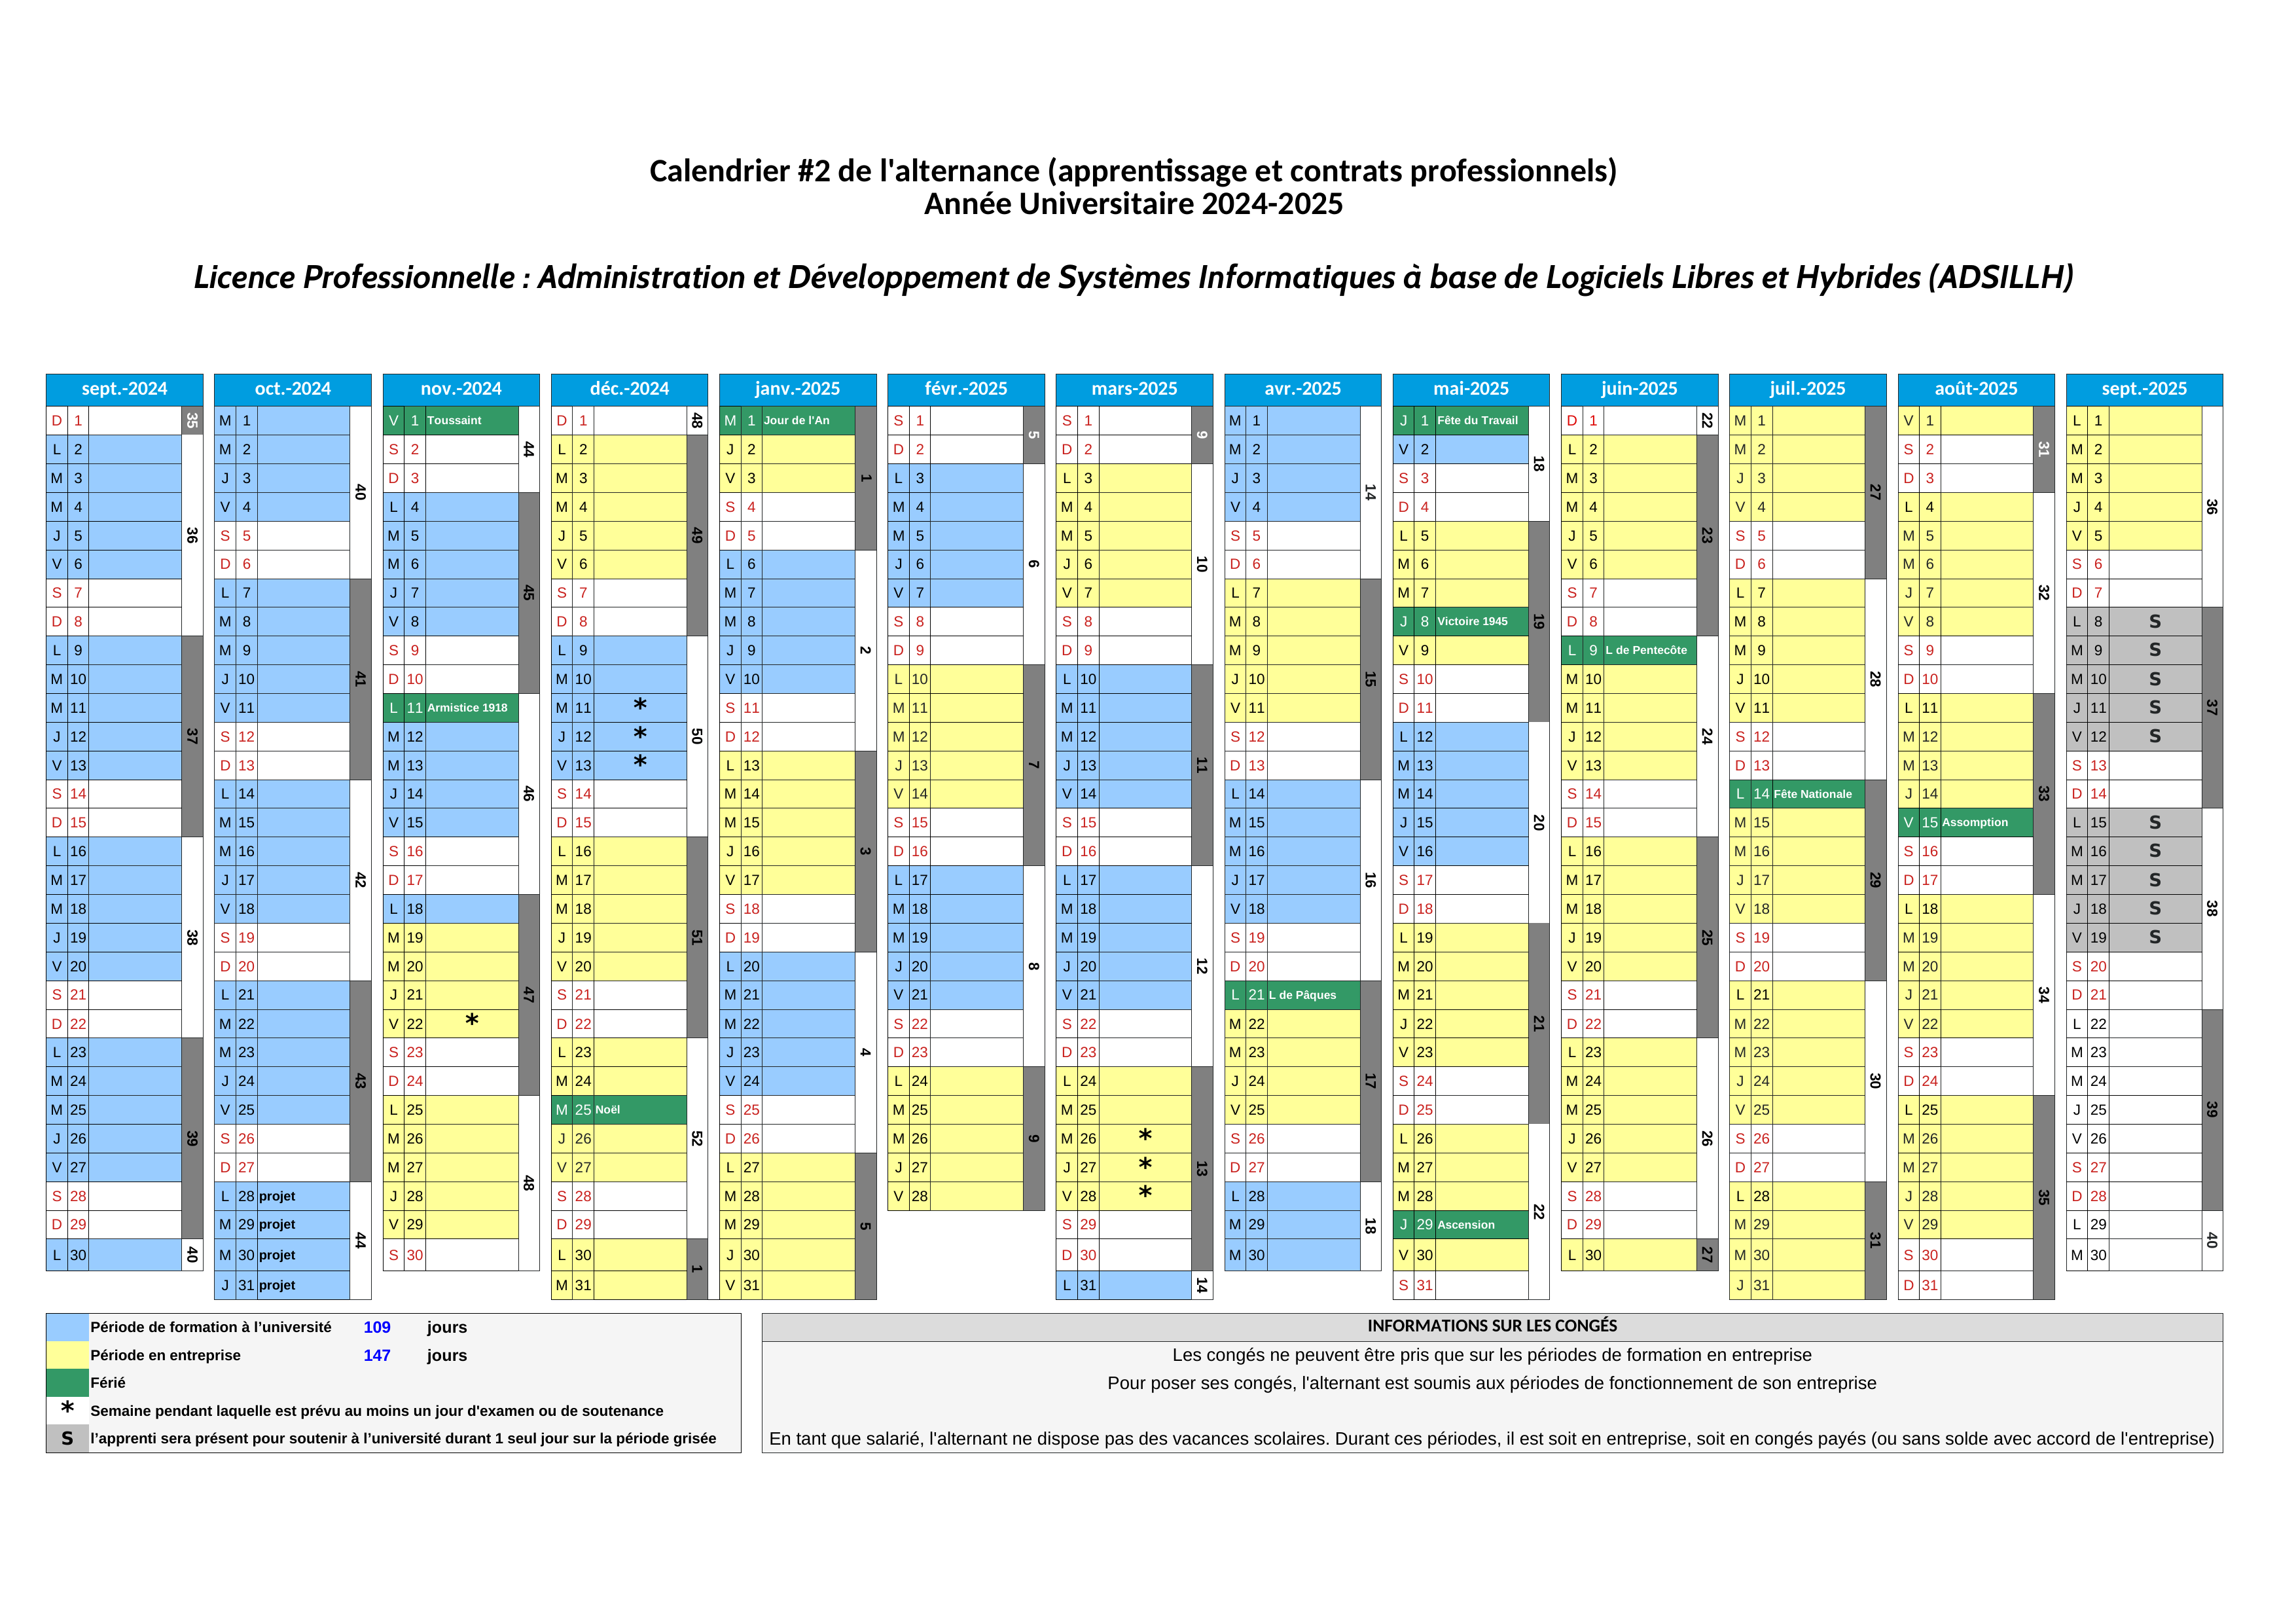 Calendrier prévisionnel (2024-2025) [alternance 2]